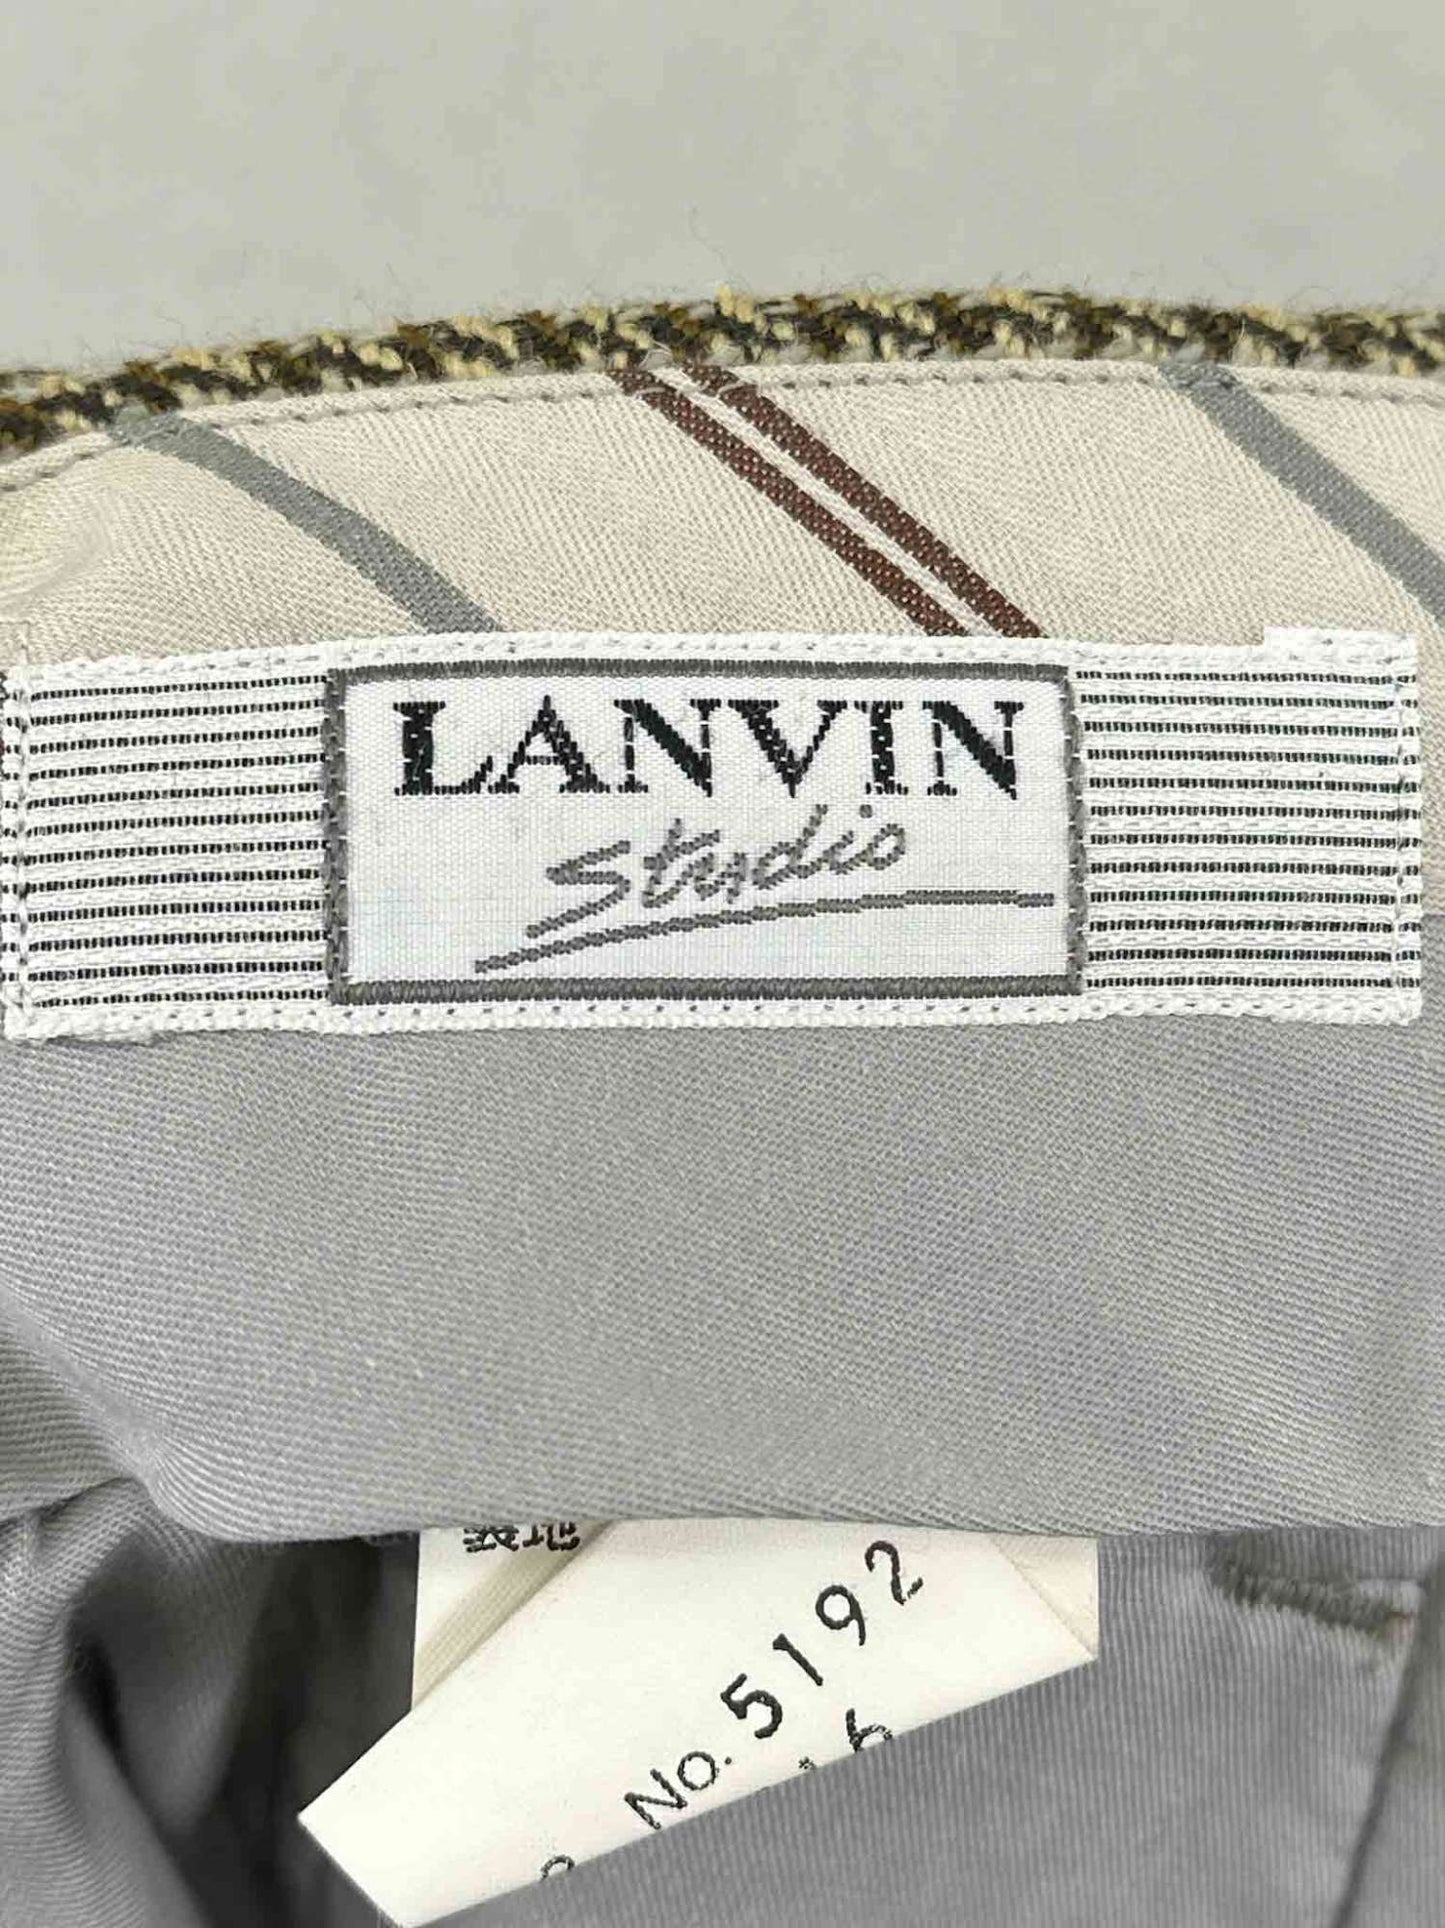 LANVIN studio slacks